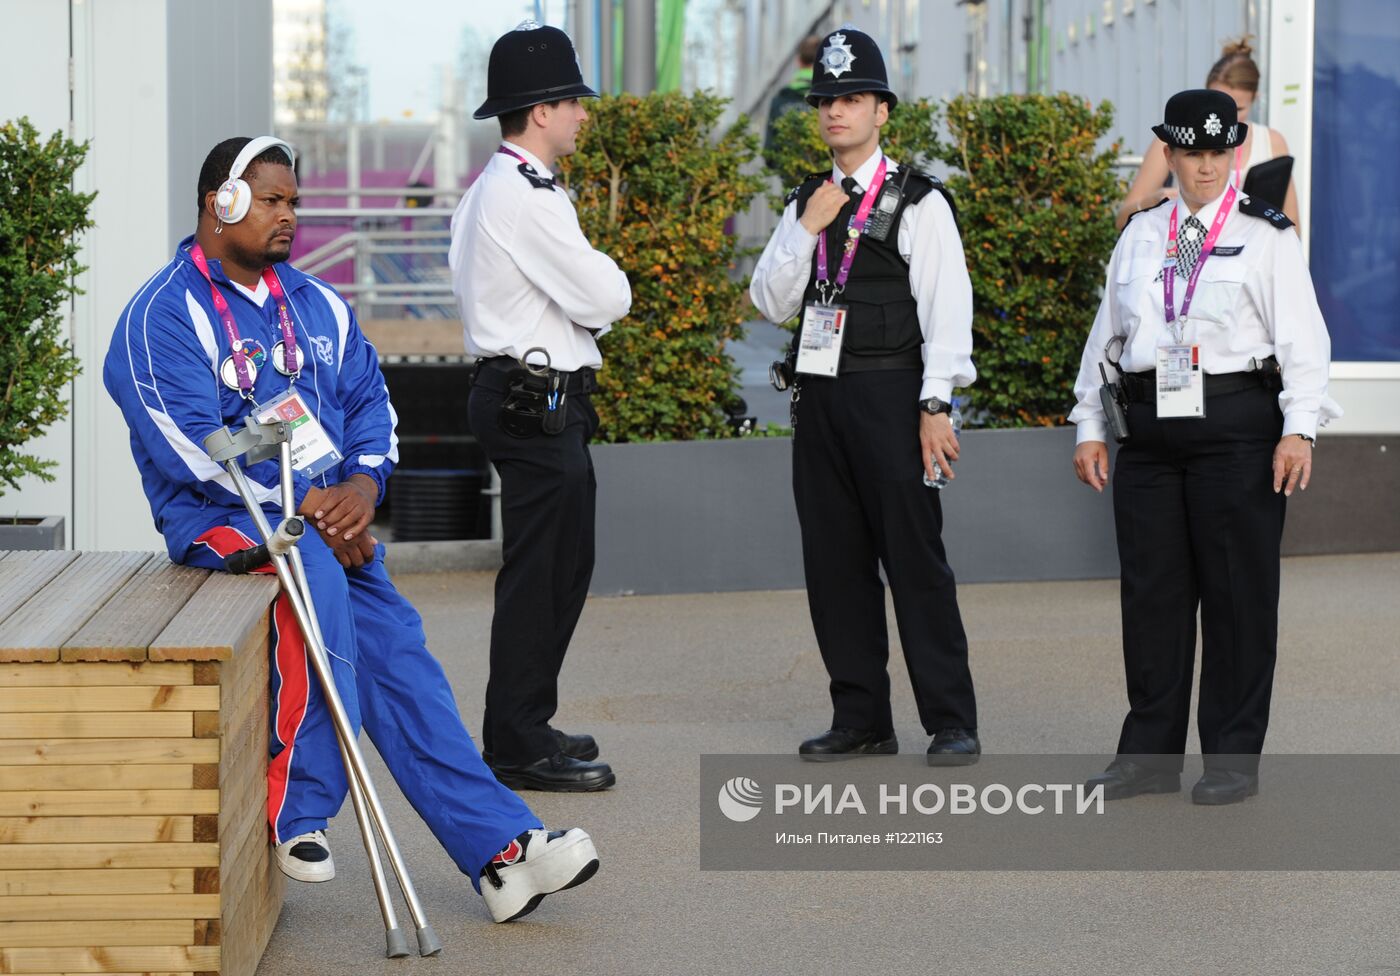 Подготовка к открытию ХIV Паралимпийских игр 2012 года в Лондоне